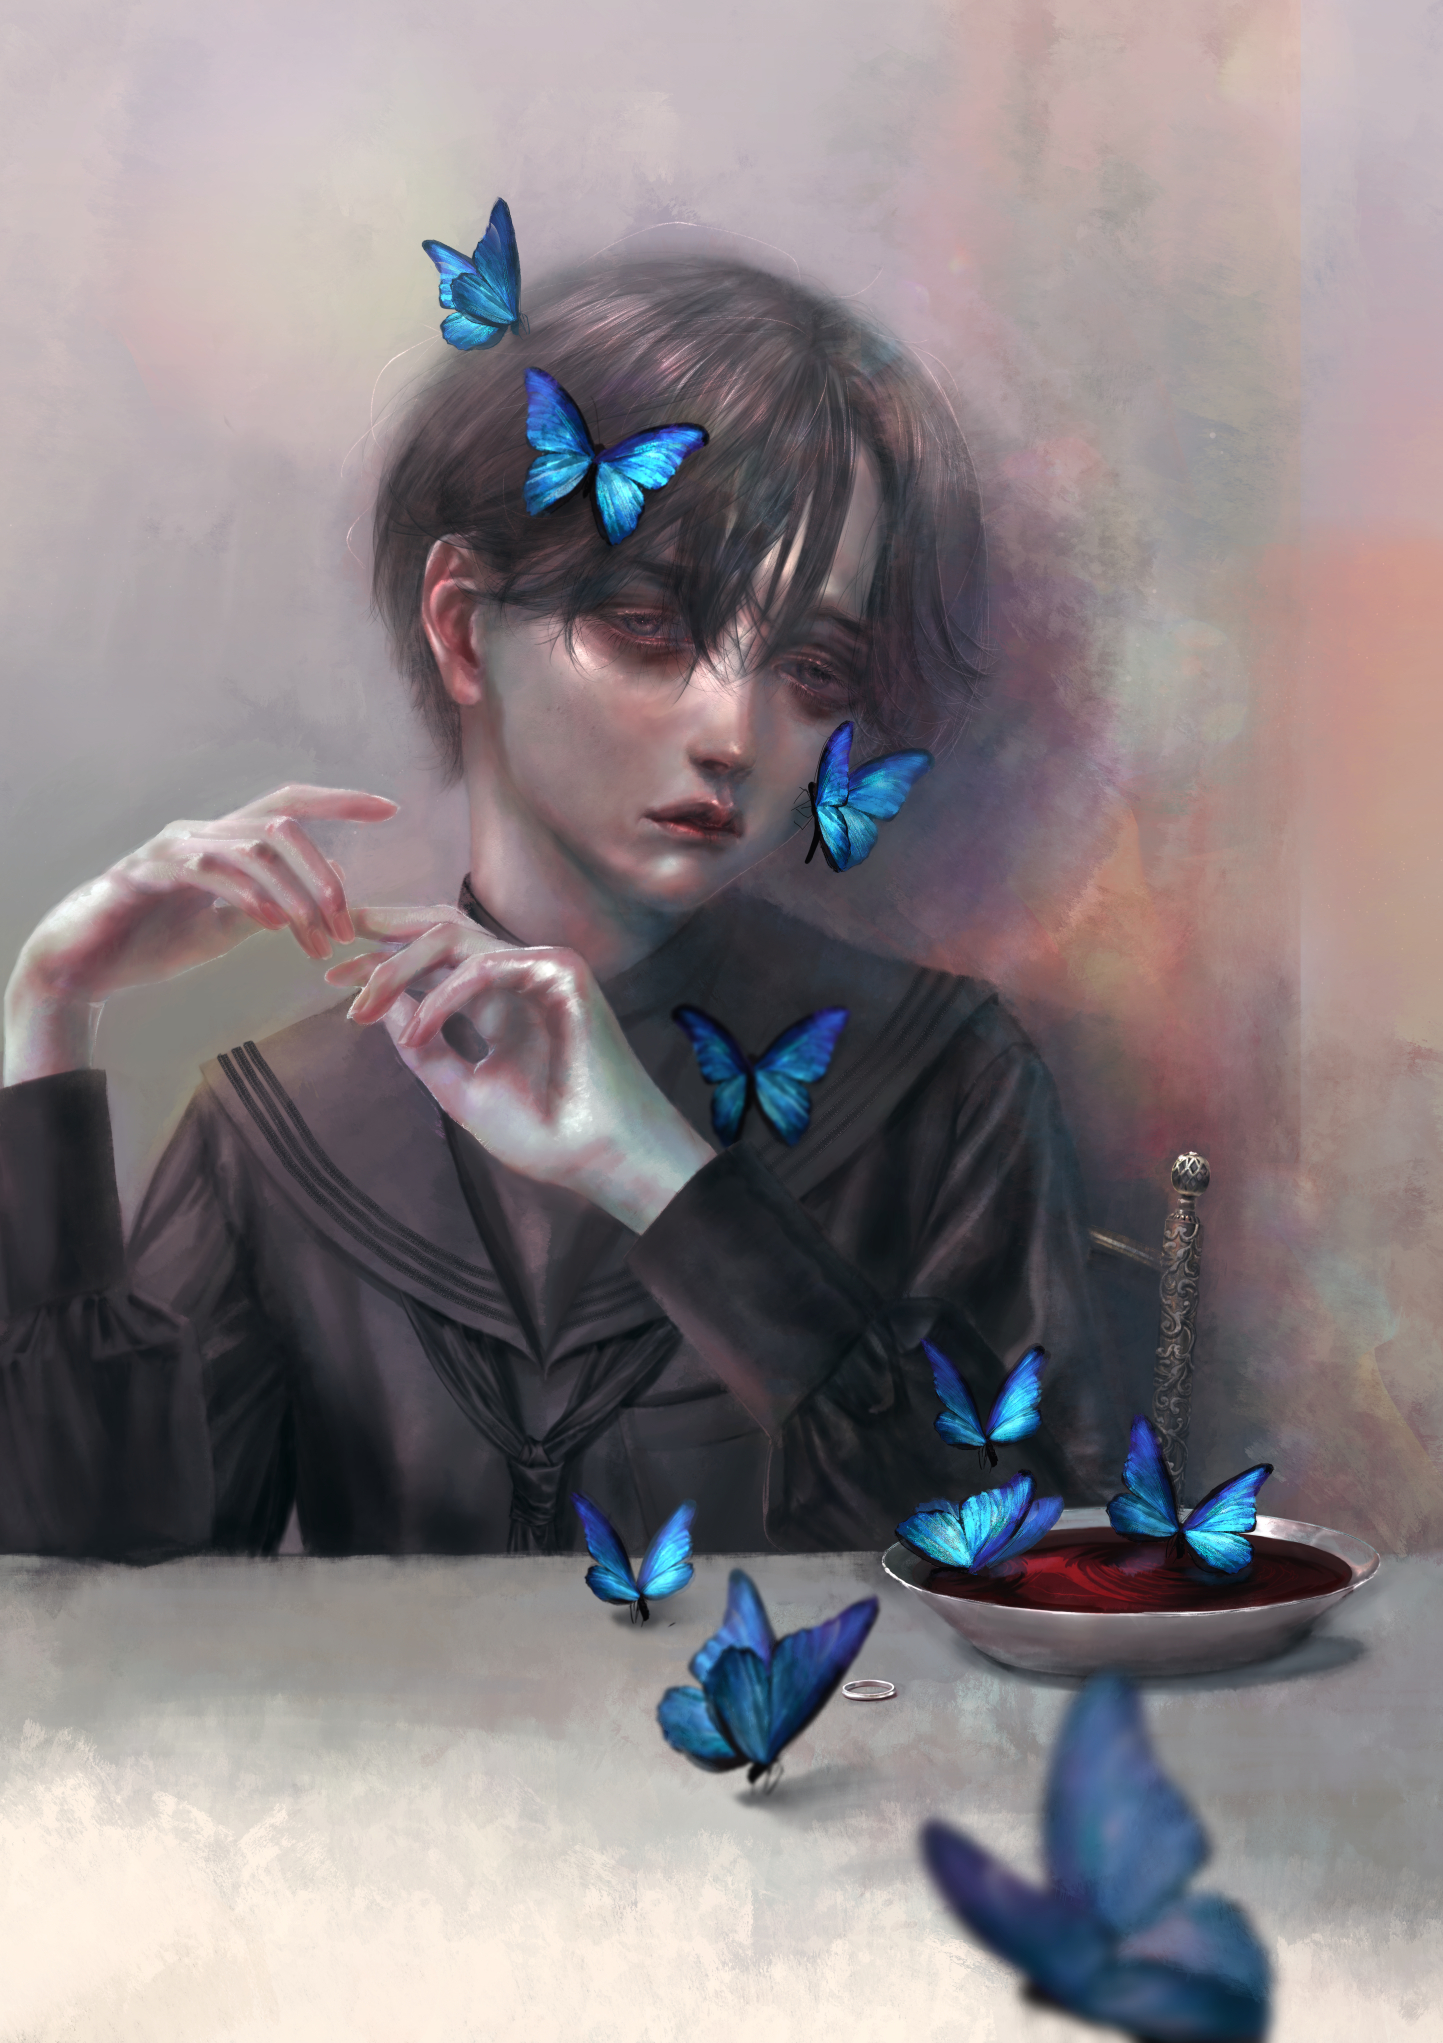 Фото Мальчик с бабочками на волосах сидит за столом, на котором стоит чашка с кровью, by sitry